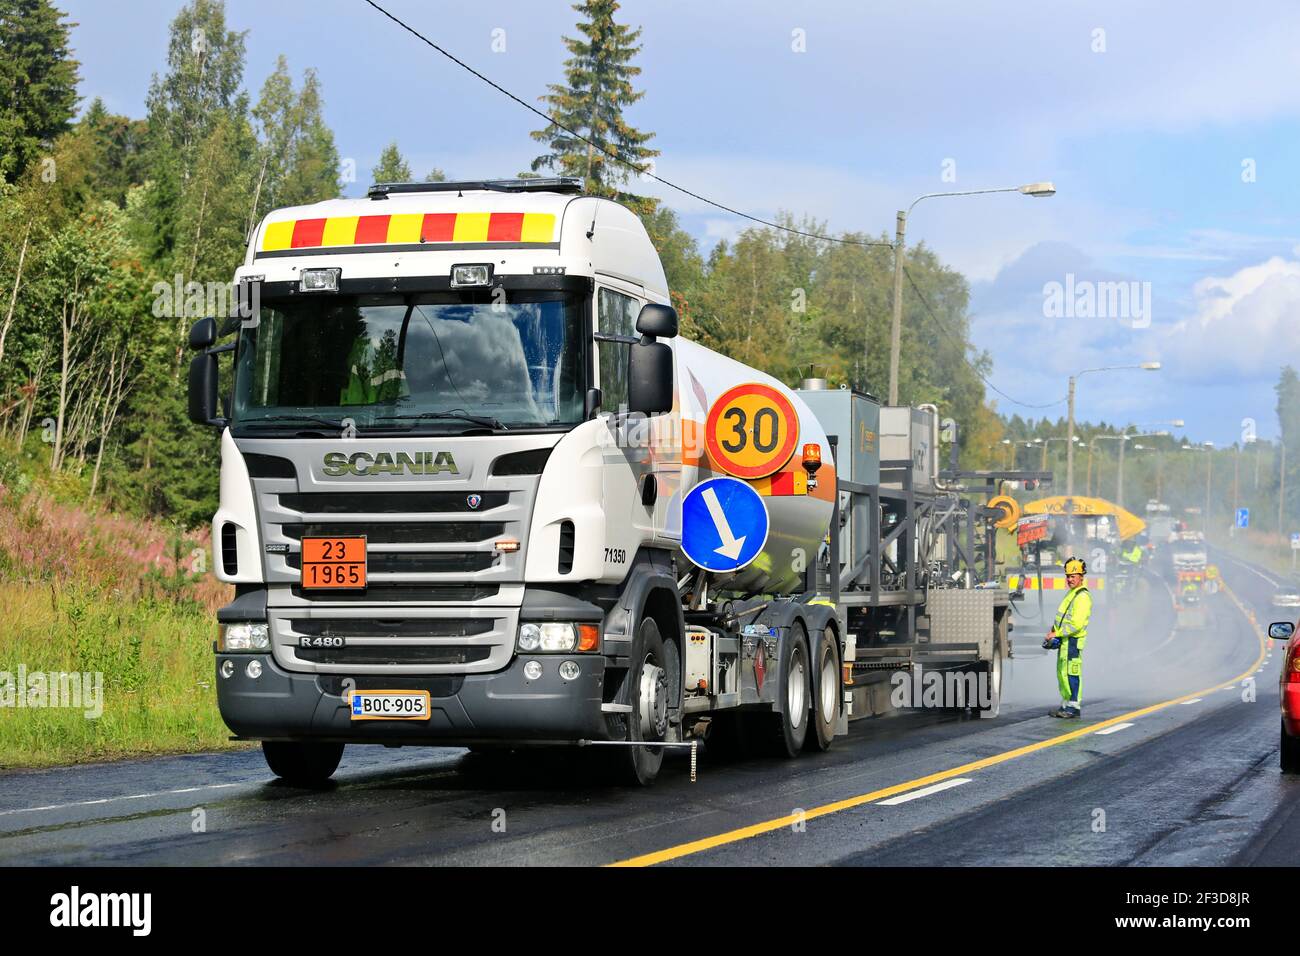 Camion de bitume Scania avec MEN et matériel de travaux routiers asphaltant en cours, autoroute fermée dans une direction. Finlande. Banque D'Images